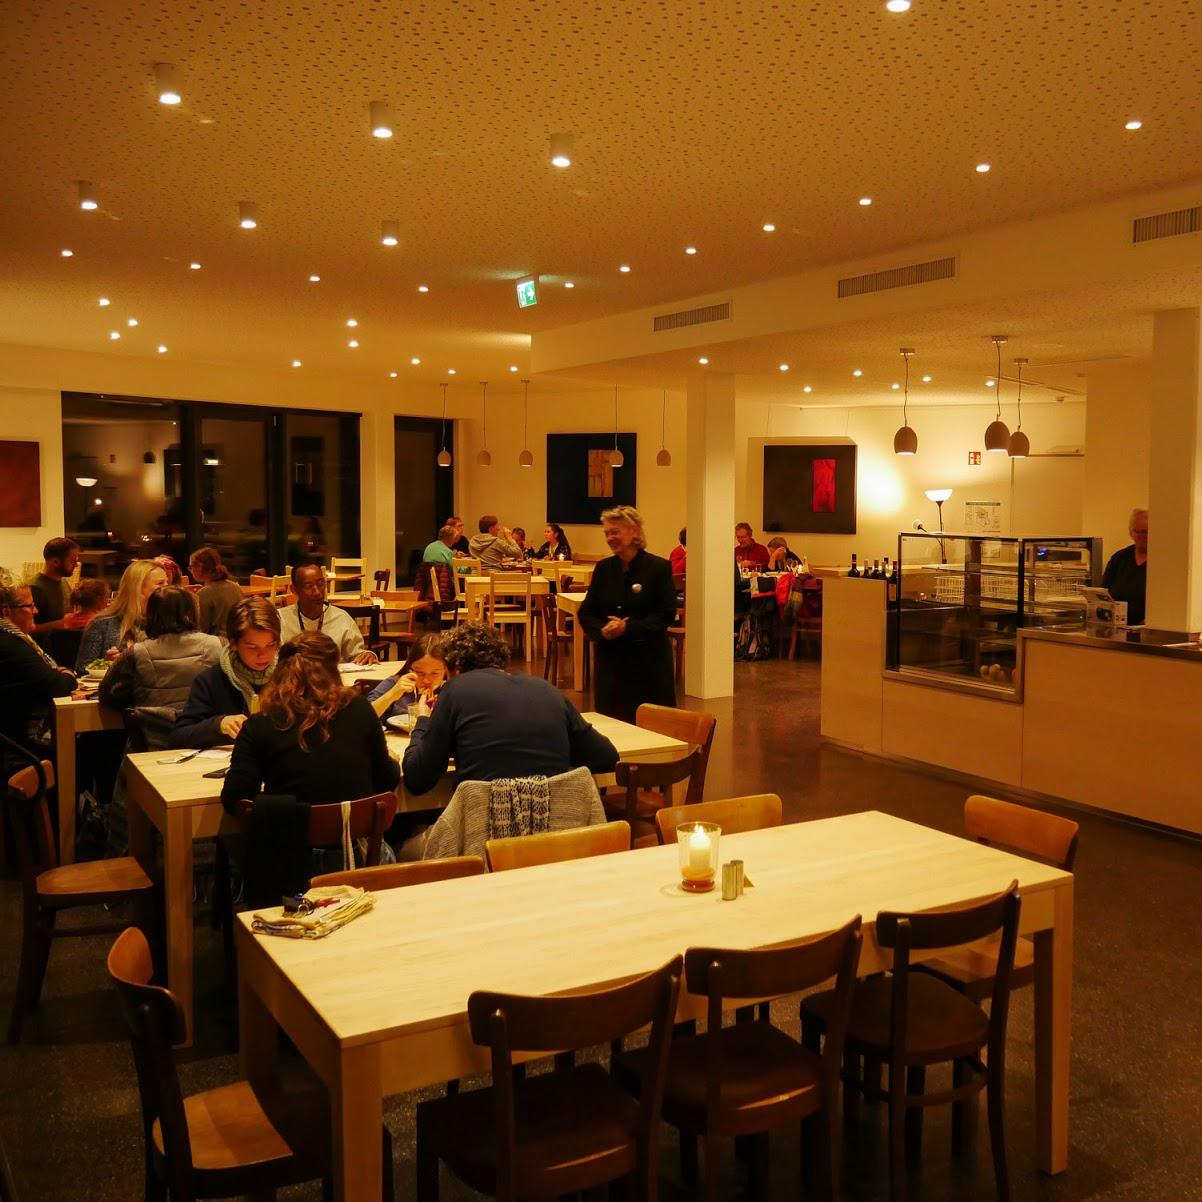 Restaurant "Gasthaus Domagk" in München